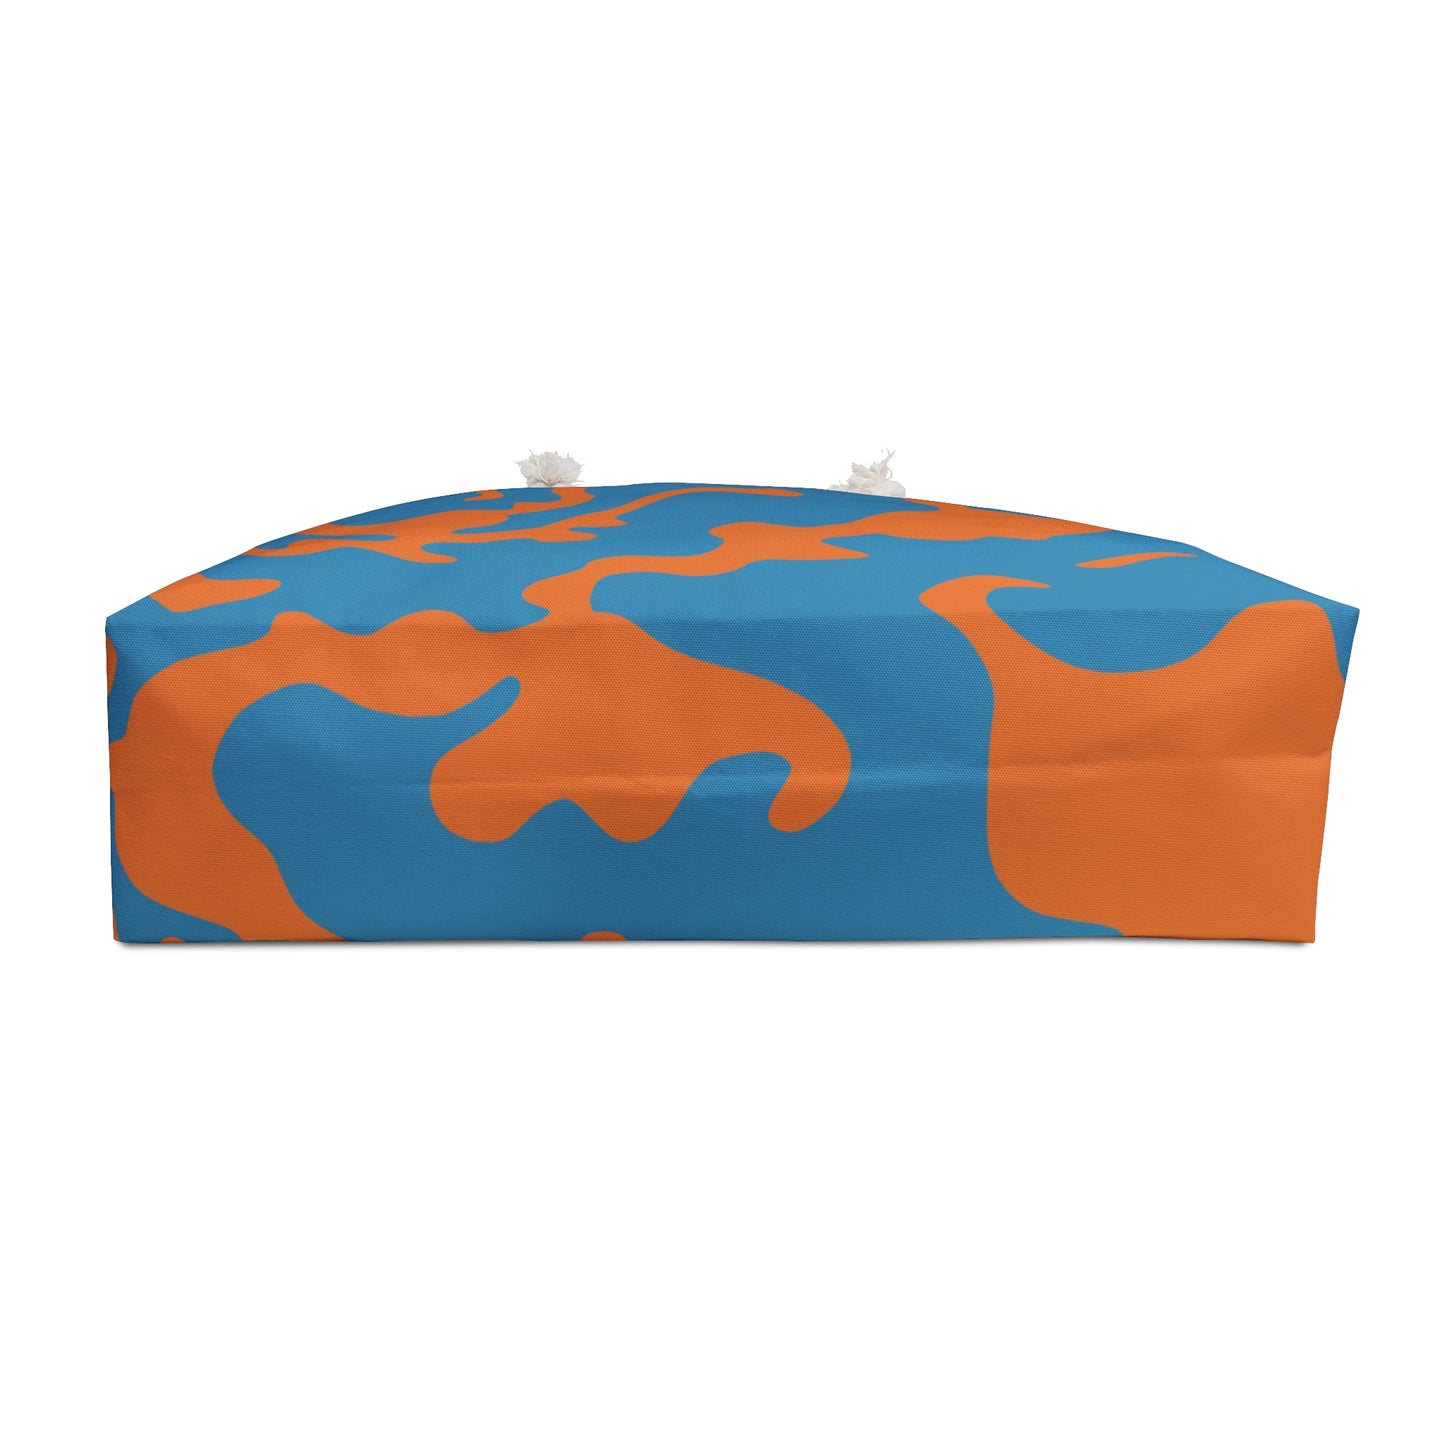 Weekender Beach Bag | All Over Print Bag | Camouflage Blue & Orange Design